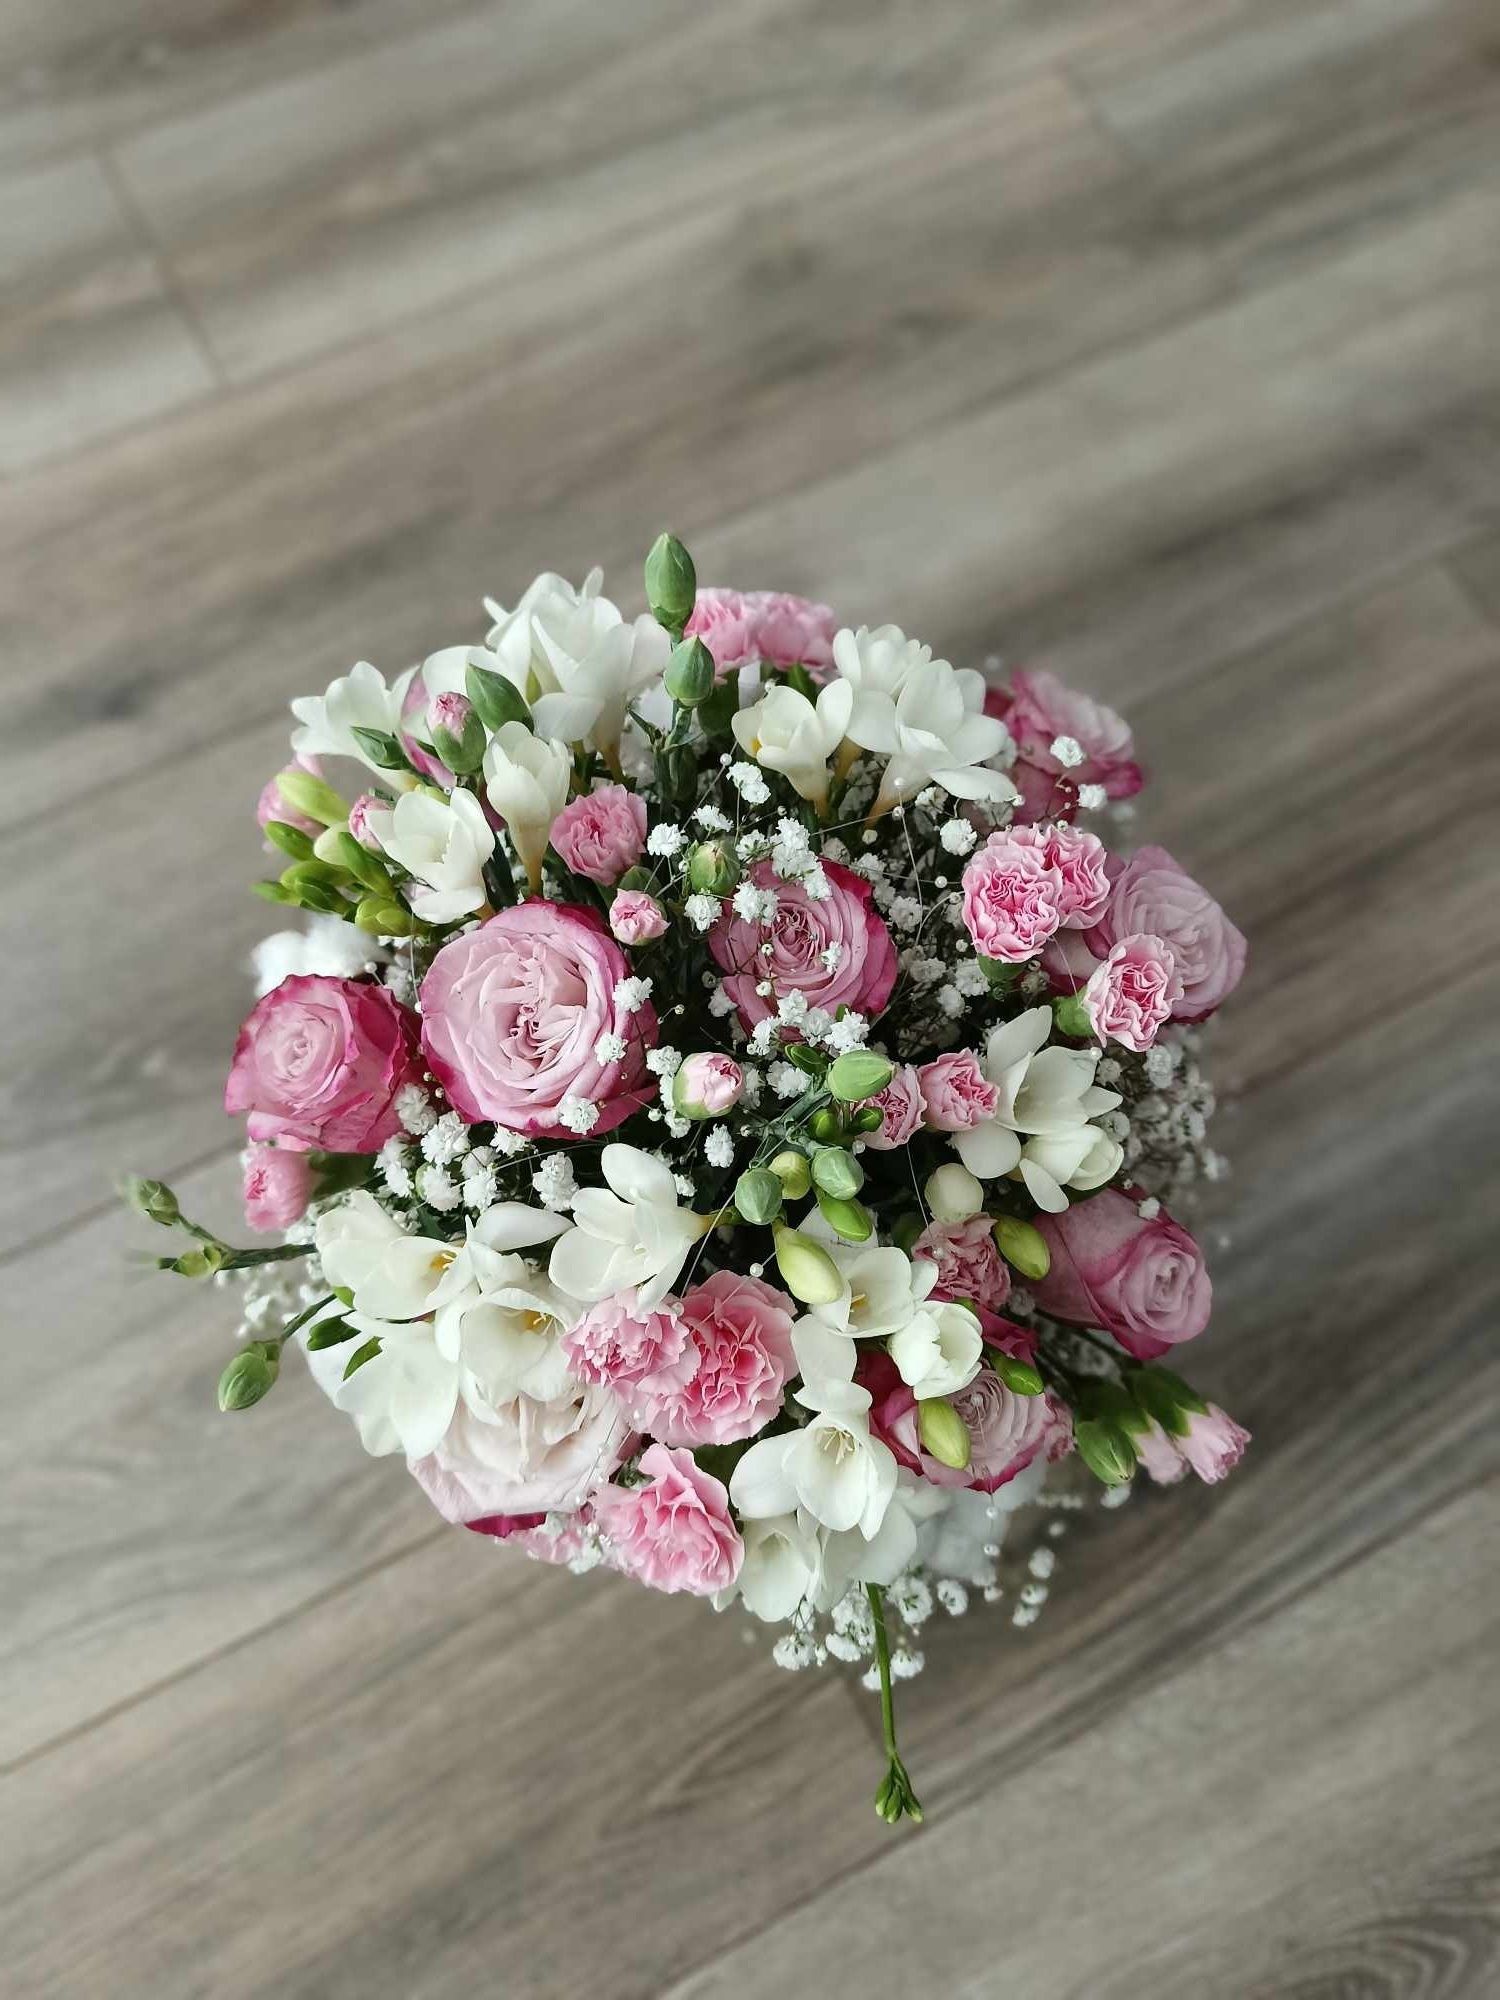 Flower box - żywe piękne kwiaty w boxe, zamówienia